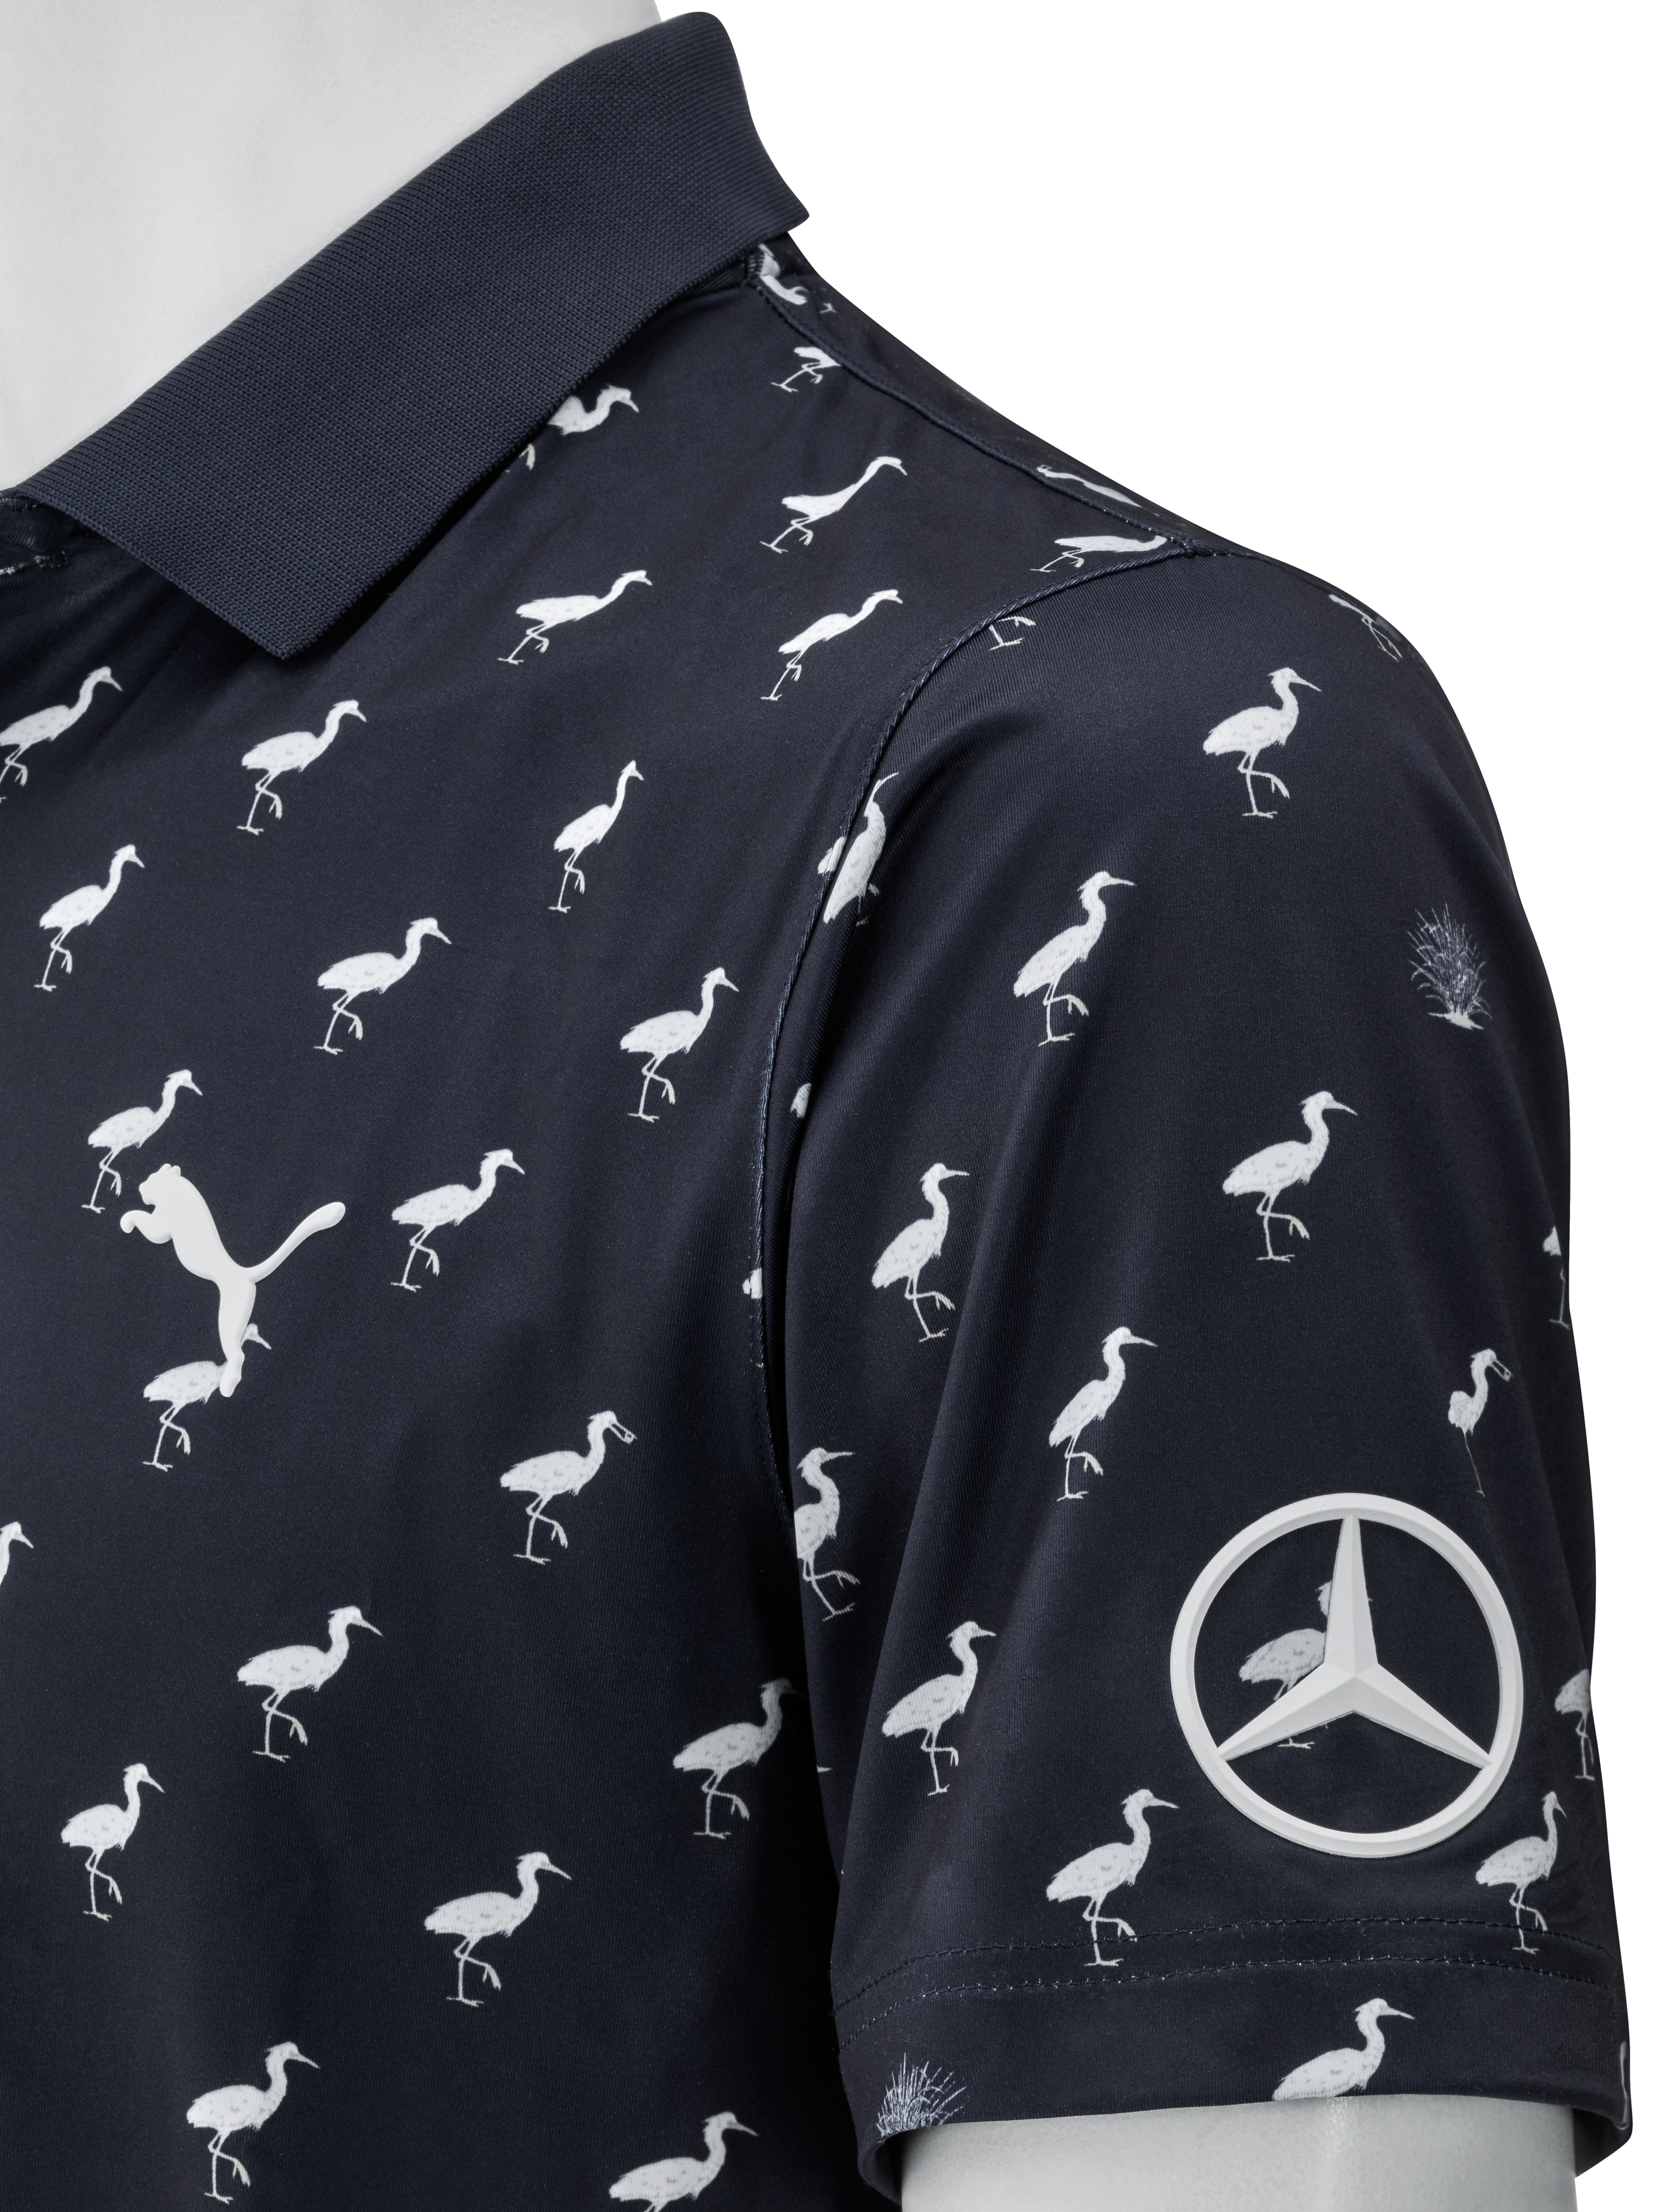 Golf-Poloshirt Herren - navy, XL